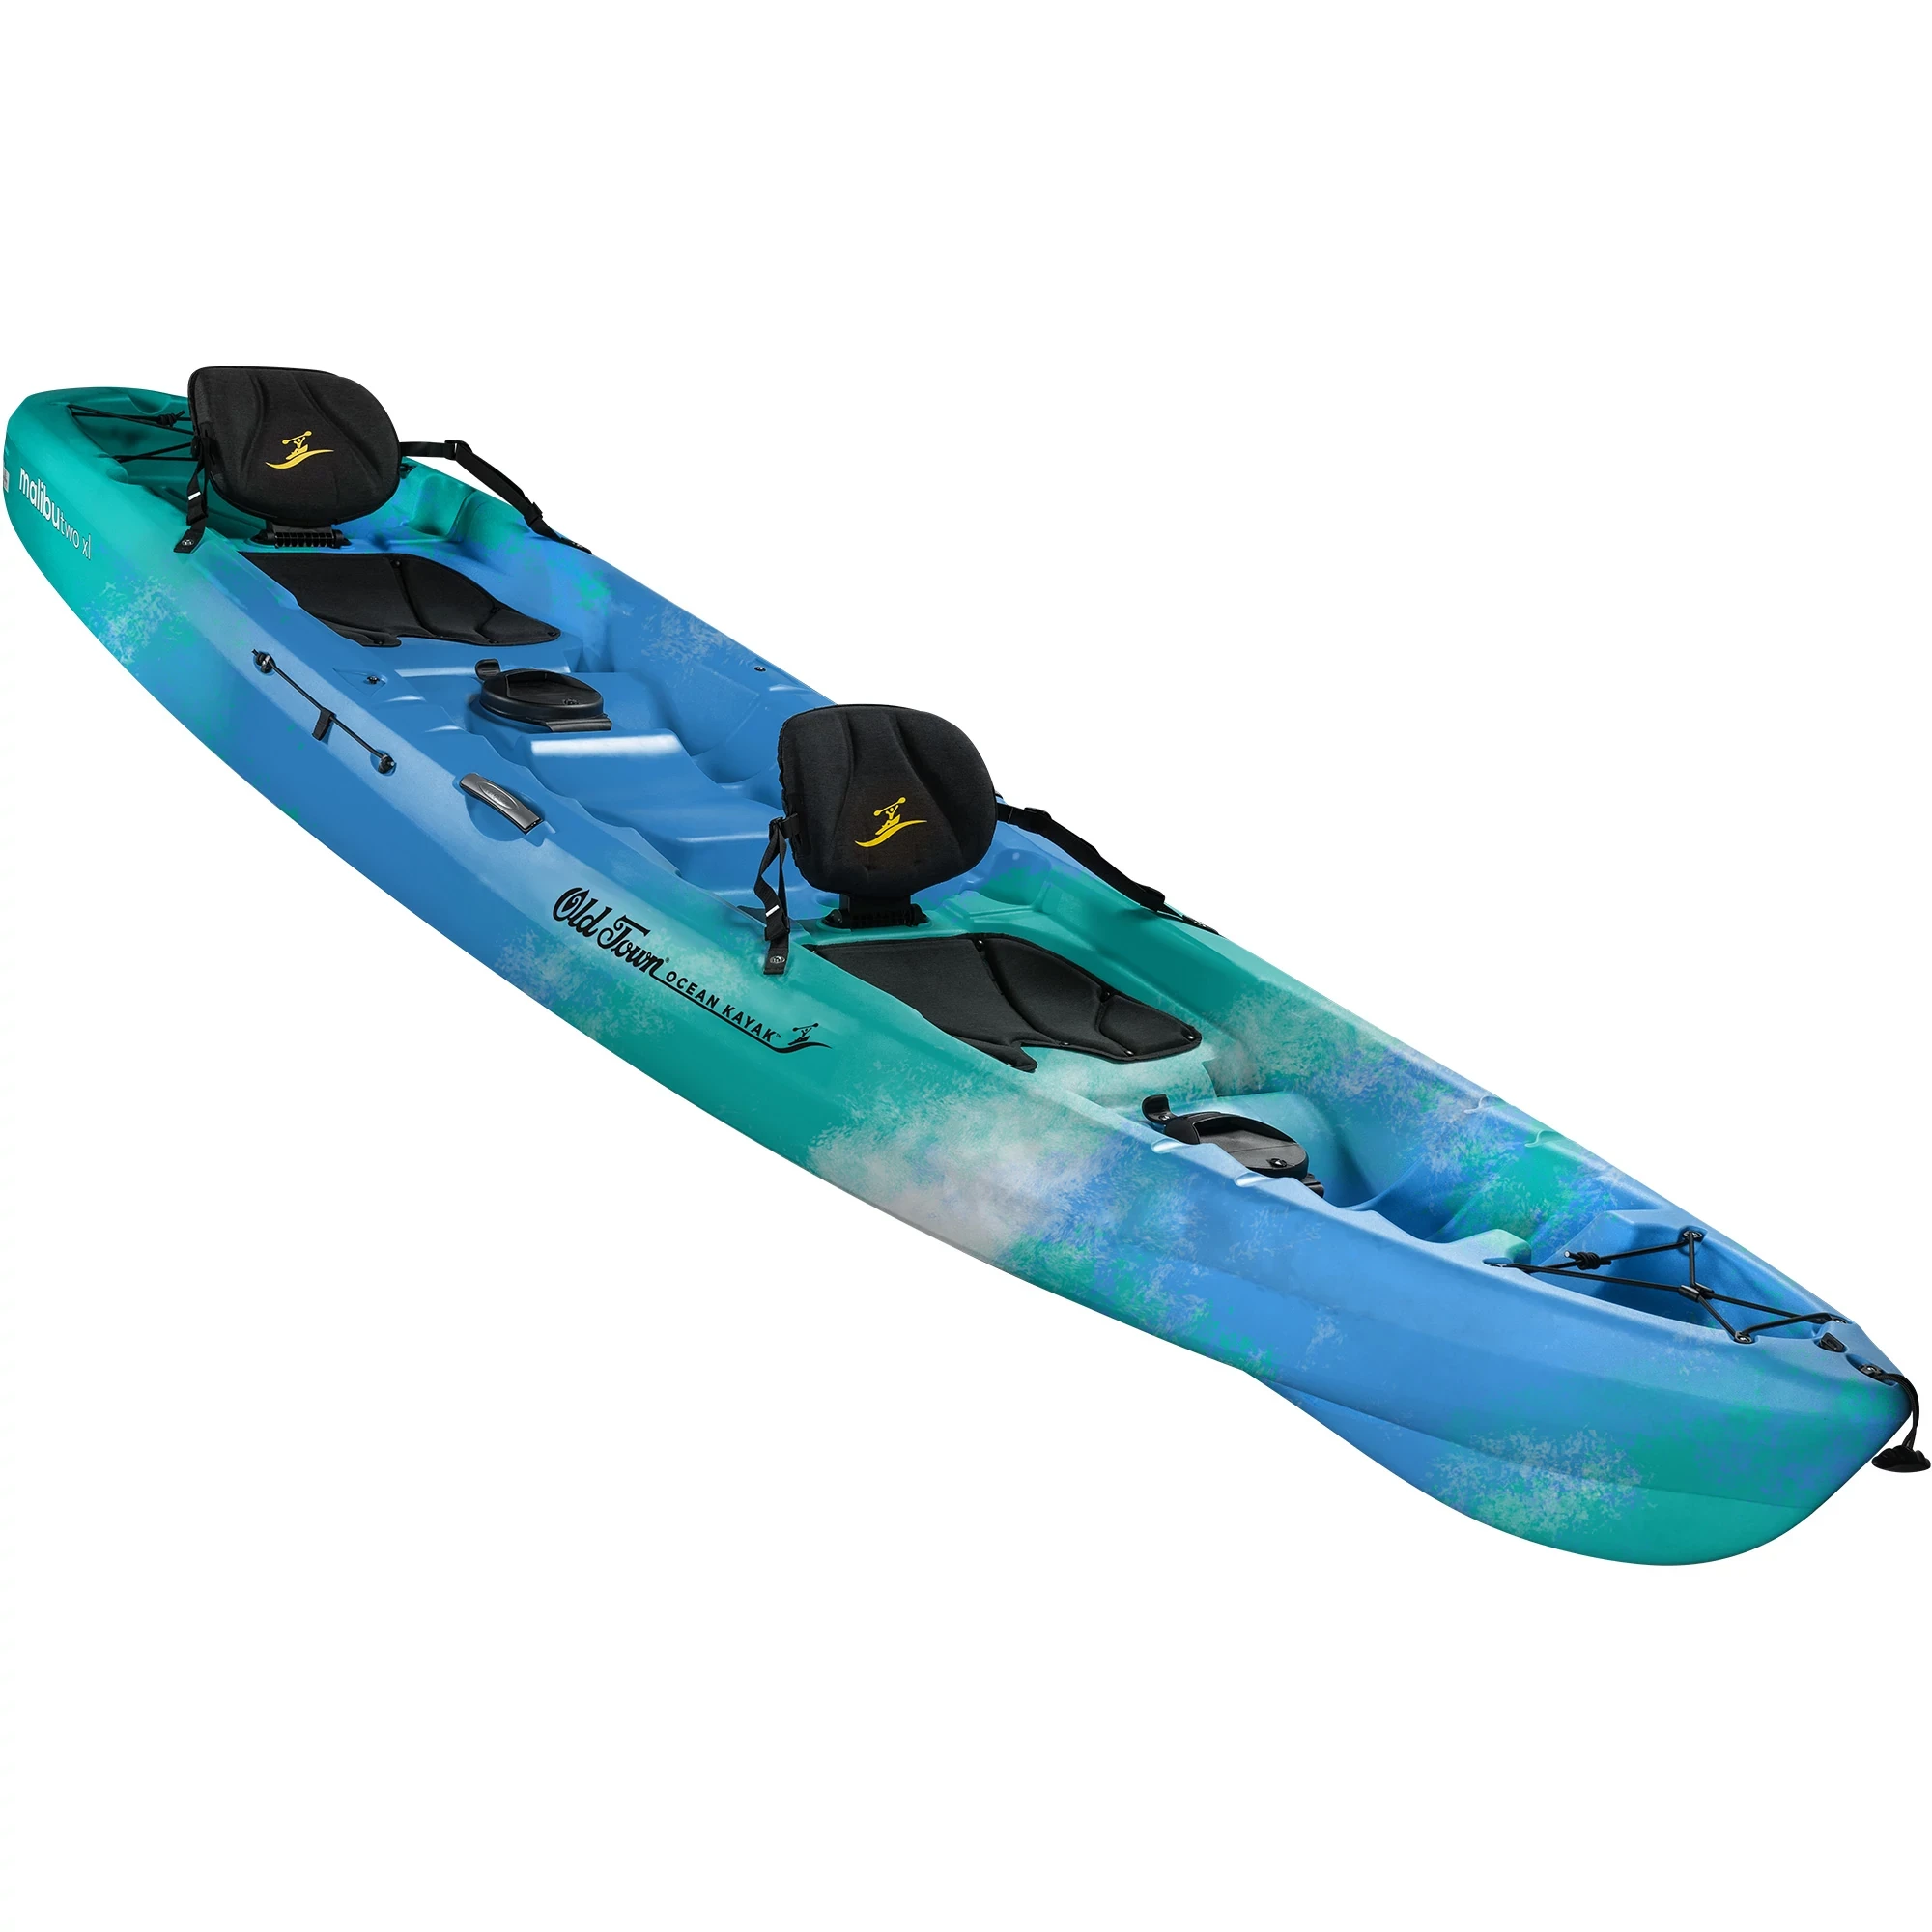 Ocean Kayak Malibu Two XL - Seaglass - Angled View